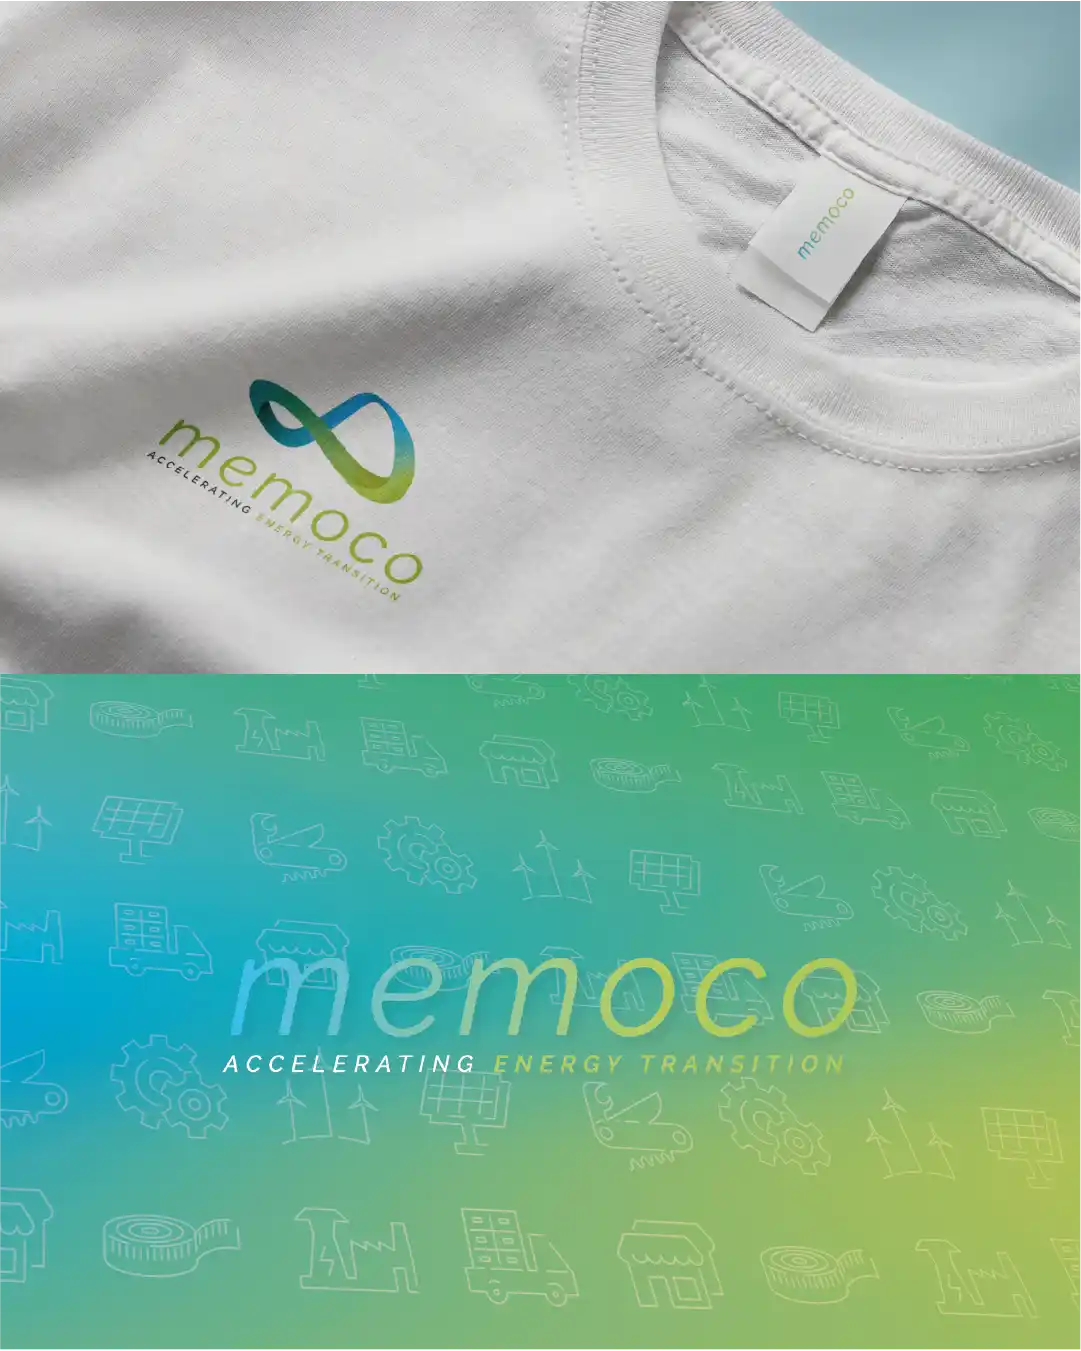 Univers de marque allant du logo aux pictogrammes et textures de la marque de solutions énergétiques éco-responsables Memoco.